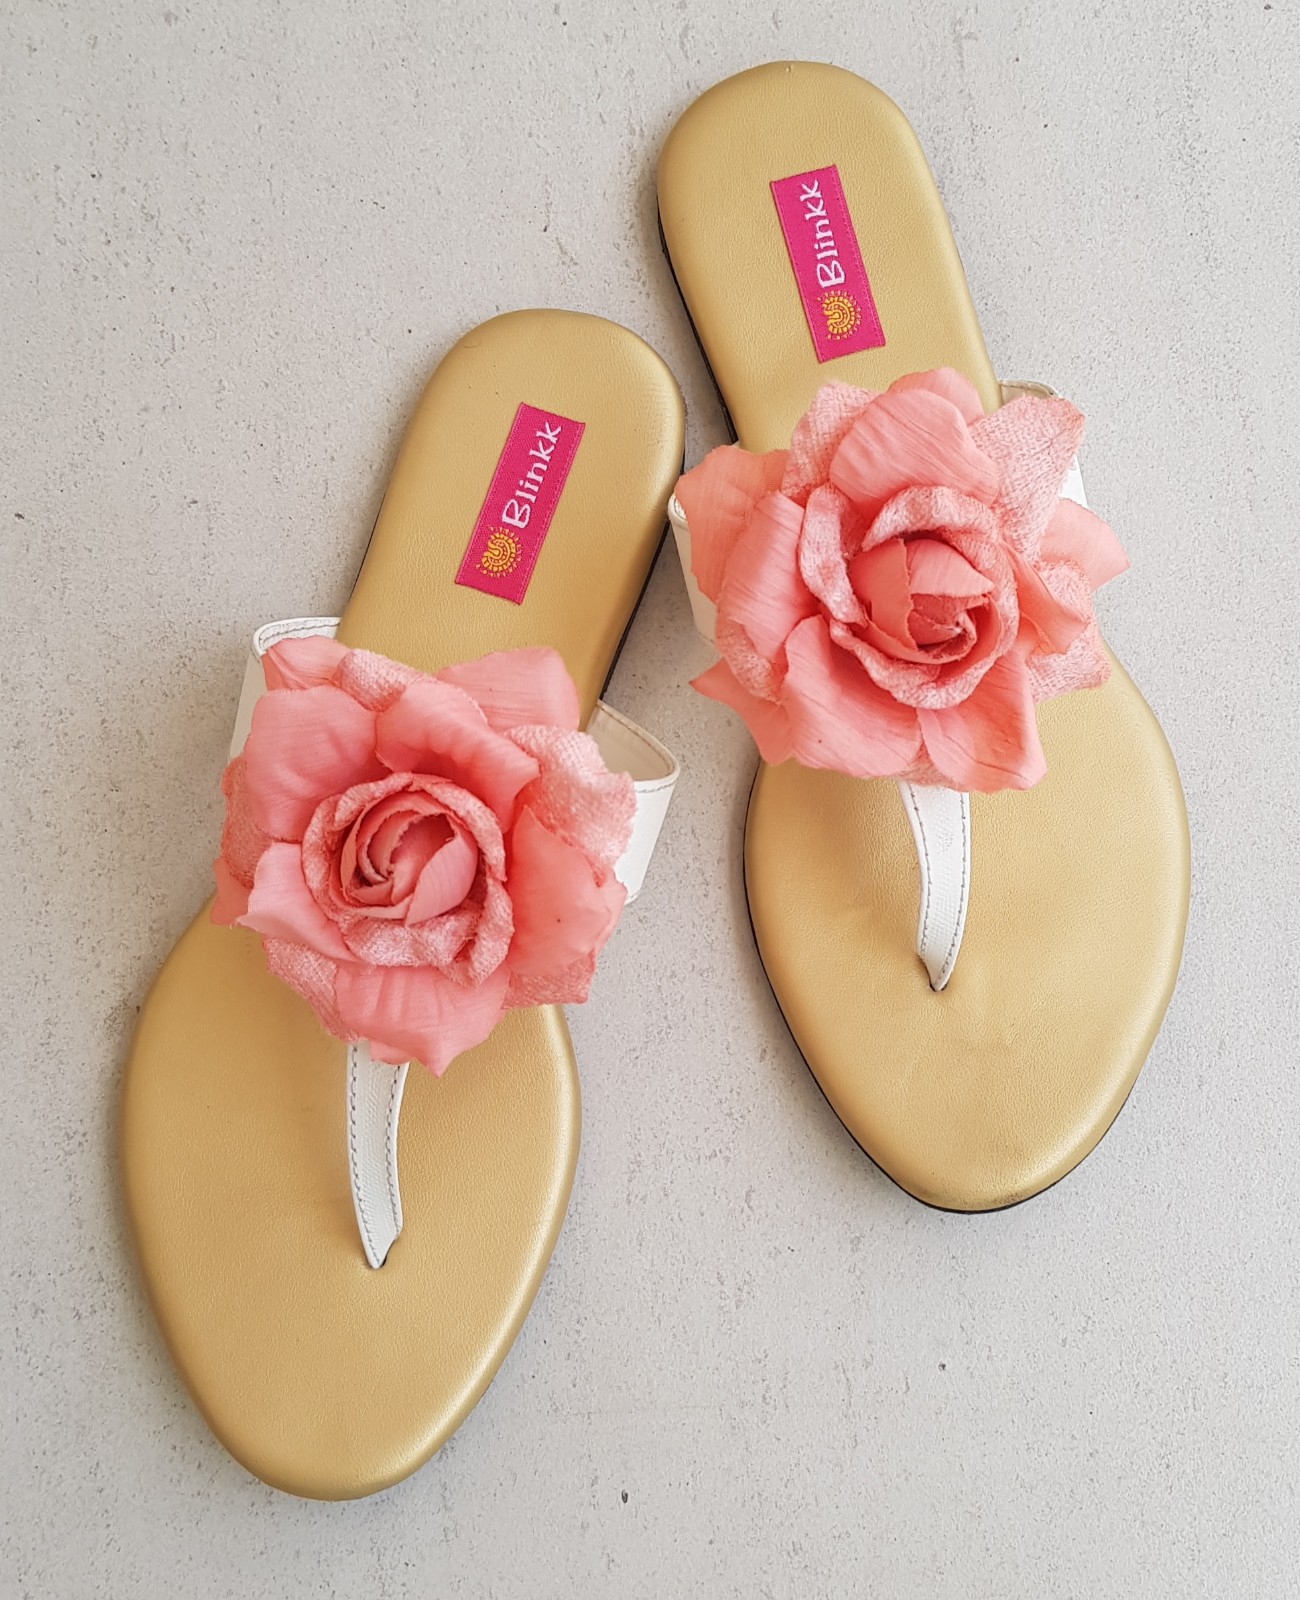 https://blinkkfootwear.com/wp-content/uploads/2020/07/Peach-Floral.jpg